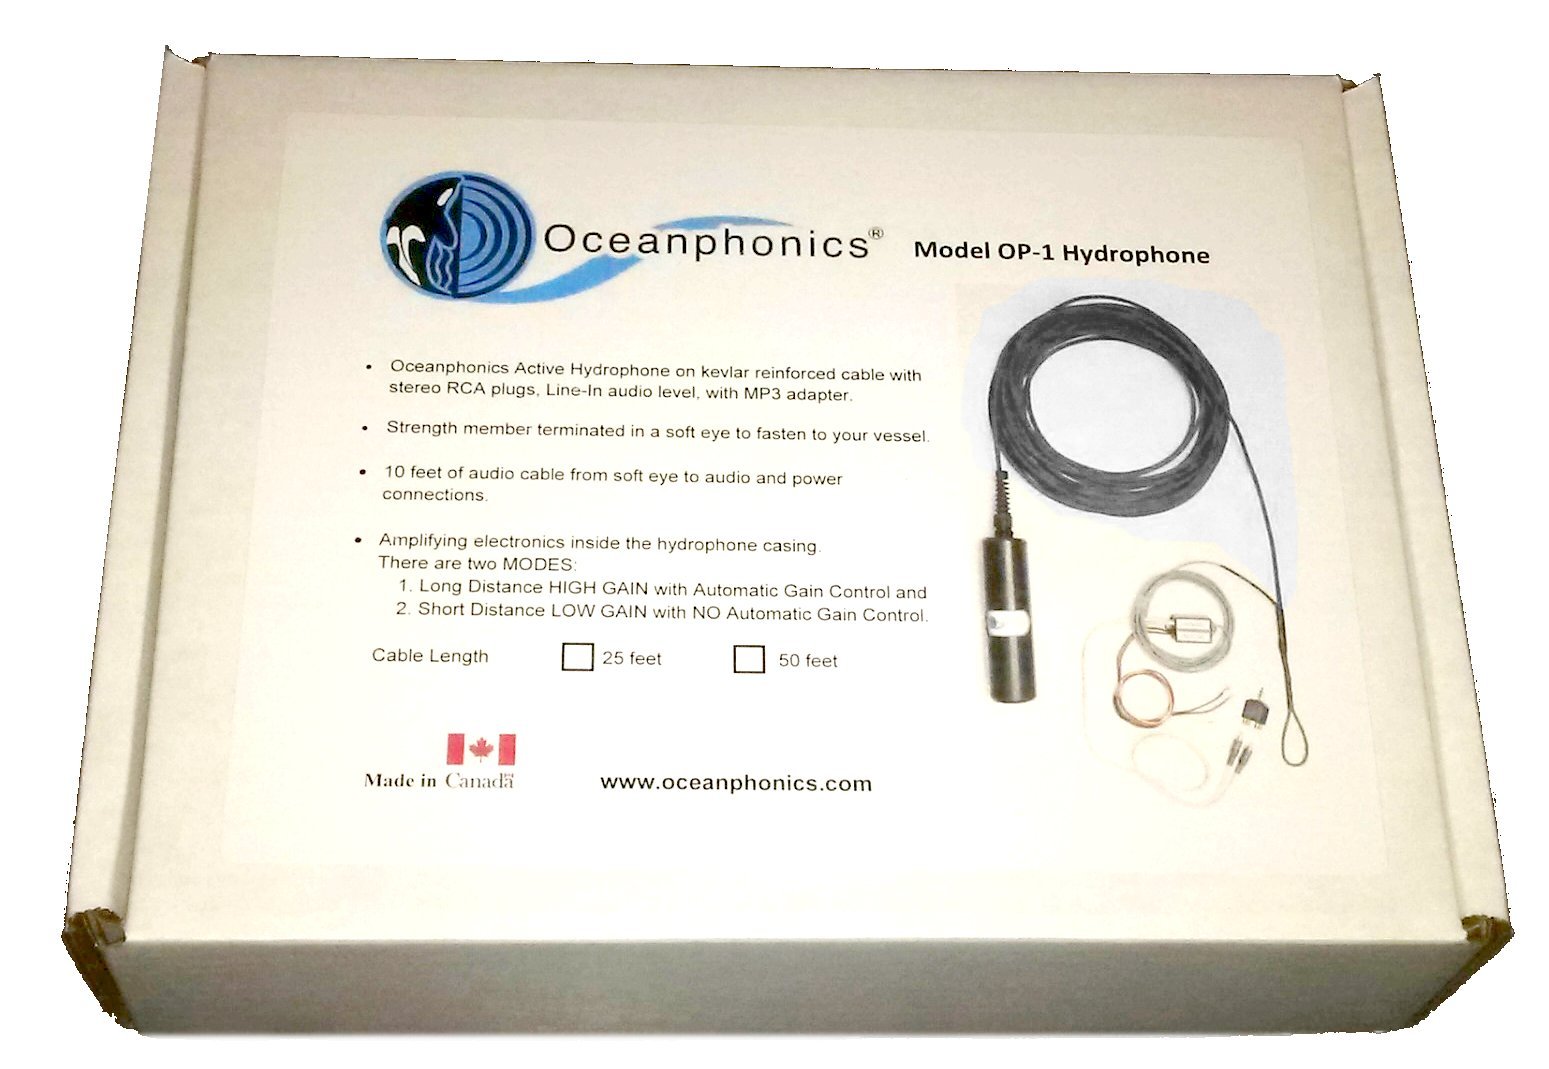 Model OP-1 hydrophone in box